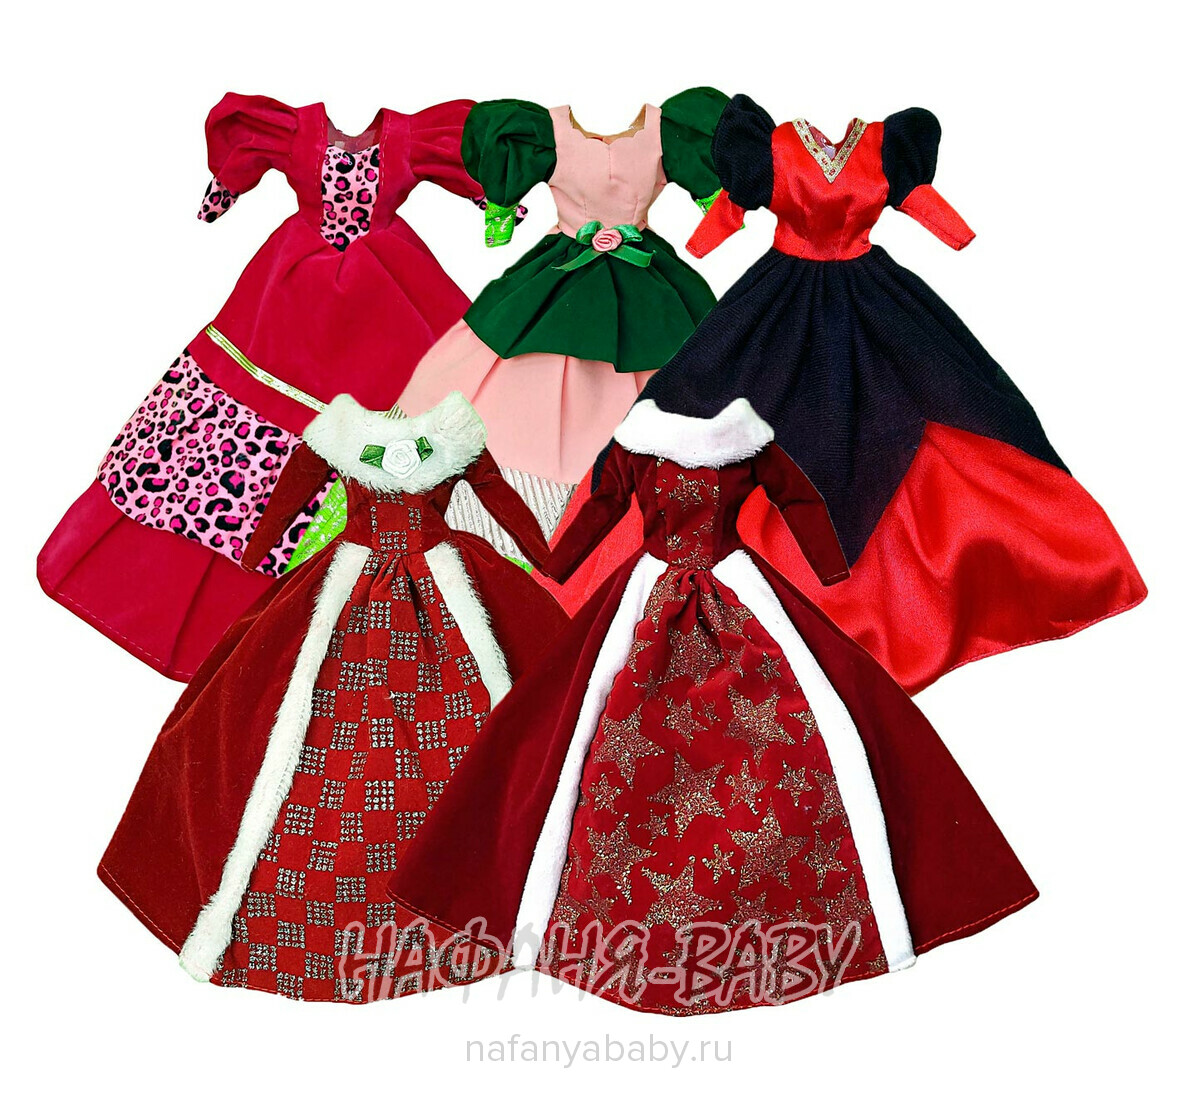 Набор платьев для куклы Барби арт: 41001, купить в интернет магазине Нафаня